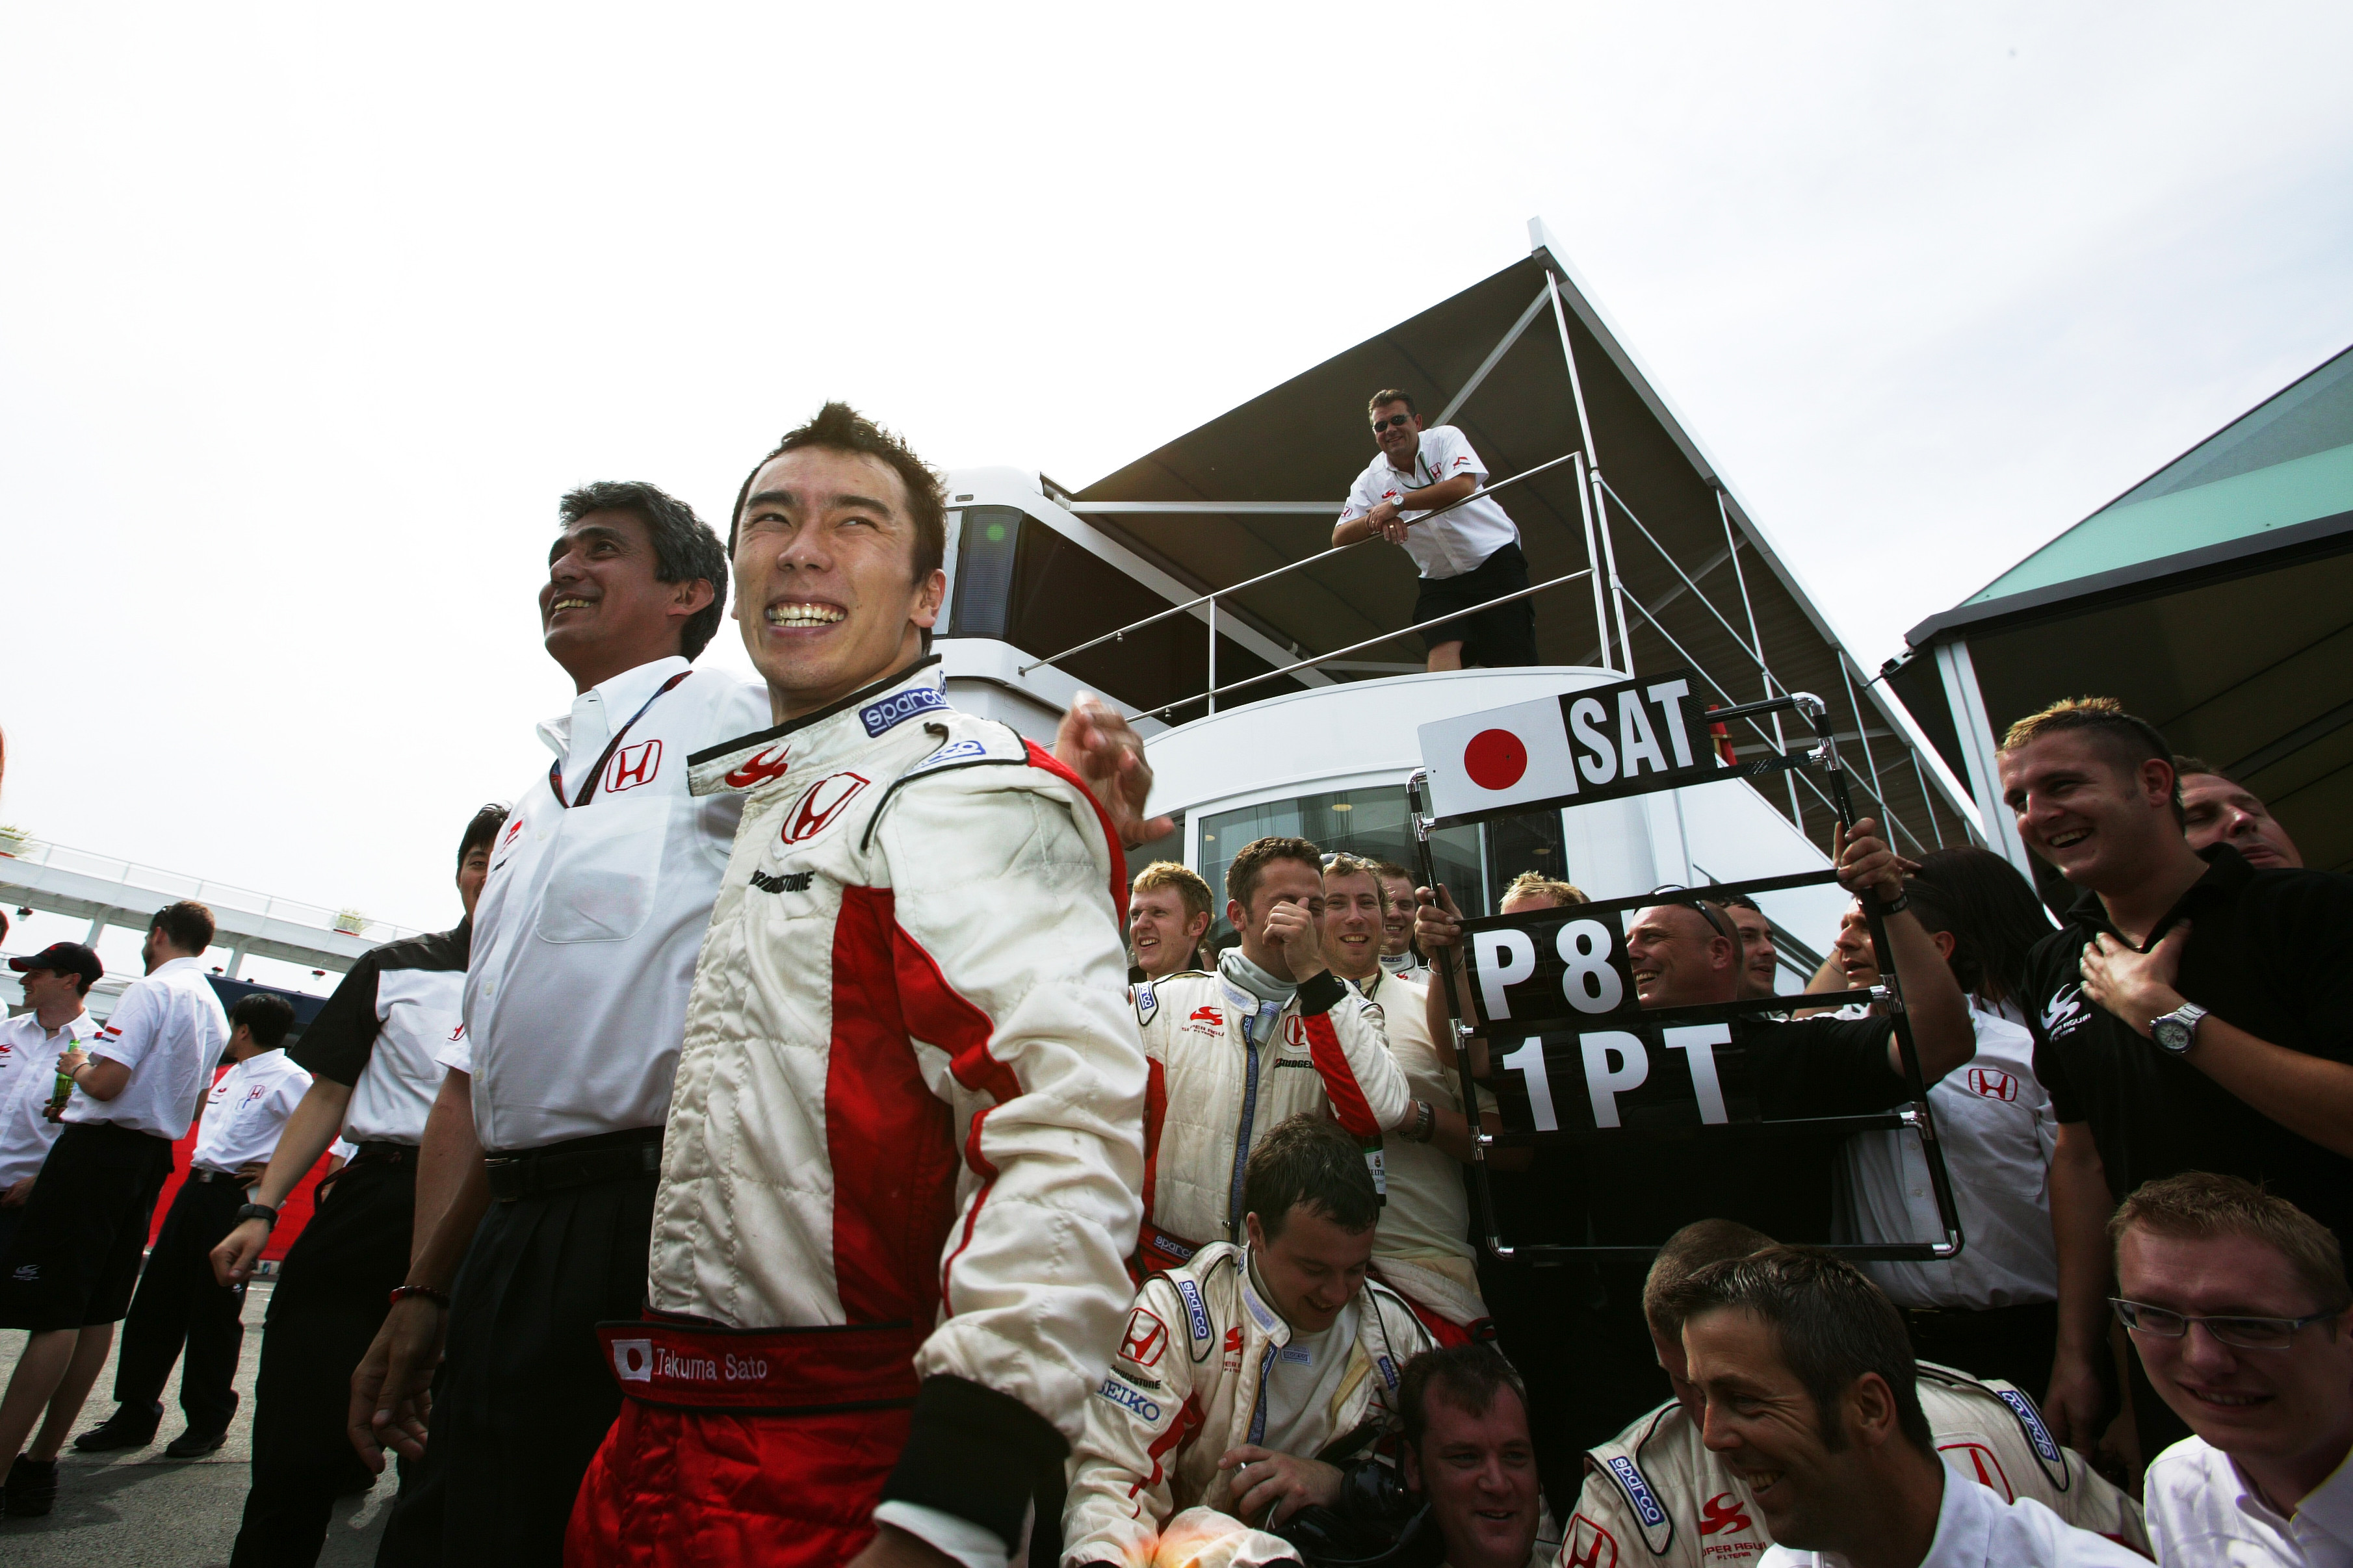 佐藤琢磨　さとう・たくま1977年１月28日生まれ。東京都出身。ホンダの育成ドライバーとしてF1ドライバーの登竜門とされるイギリスF3で日本人初のチャンピオンを獲得し、マカオGPも制する。2002年にジョーダンからデビューし、B・A・R、スーパーアグリで活躍。04年のアメリカGPで３位表彰台を獲得。その後、10年からアメリカのインディカーに参戦し、17年と20年に２度、インディ500を制した。桜井淳雄●撮影　photo by Sakurai Atsuo